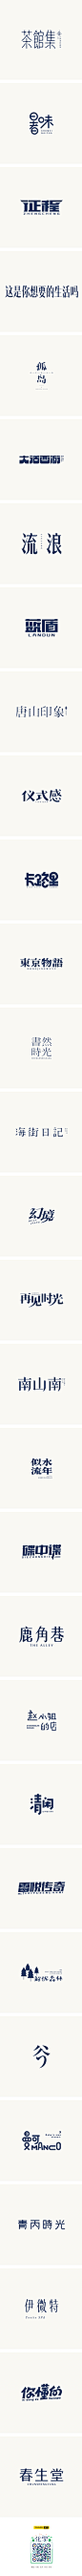 北故|字体设计整理（2）-字体传奇网-中国首个字体品牌设计师交流网